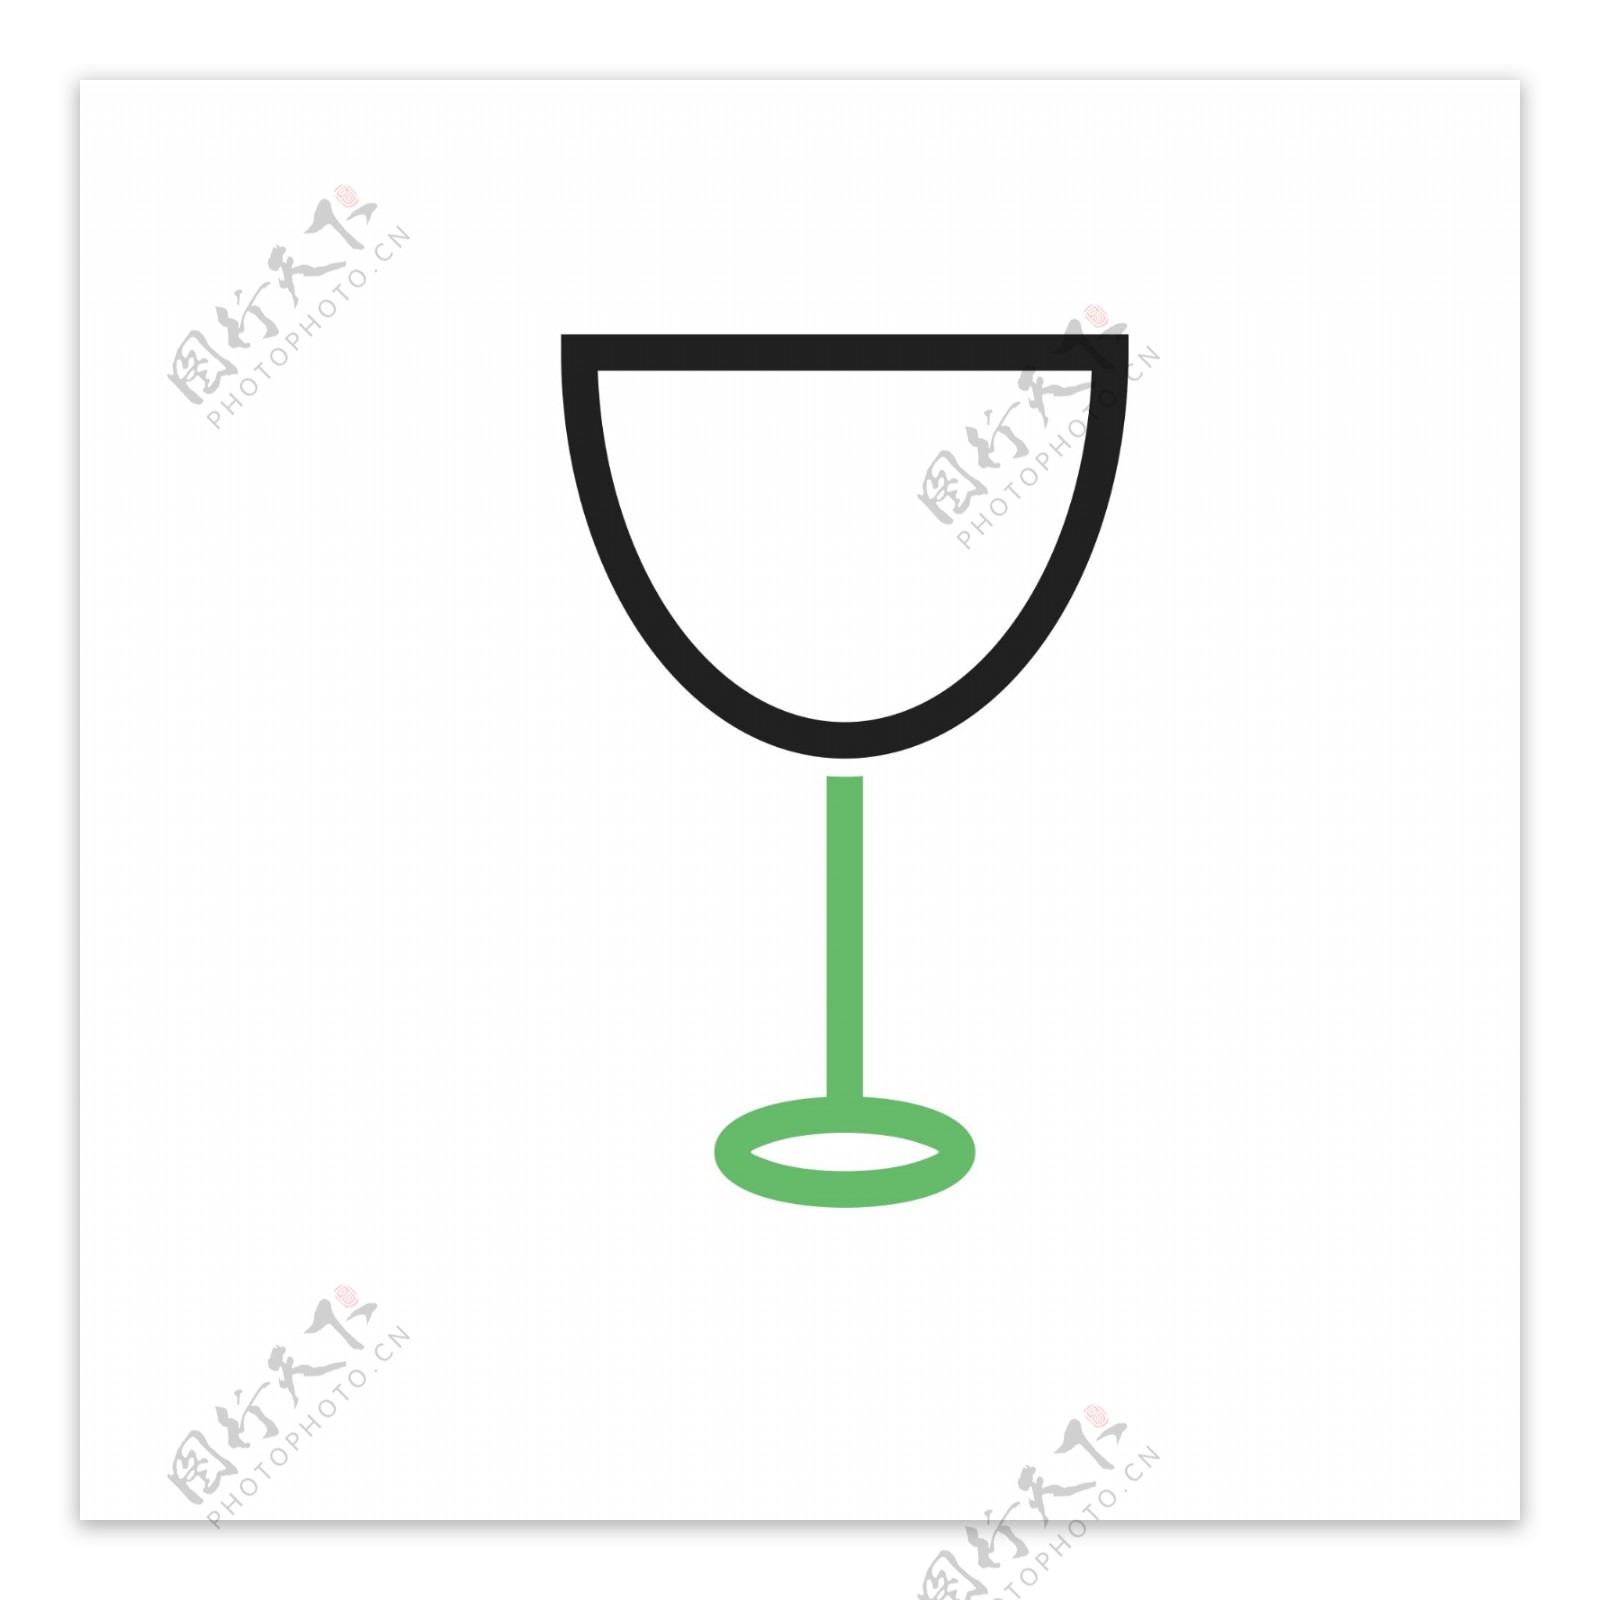 扁平化酒杯图标下载